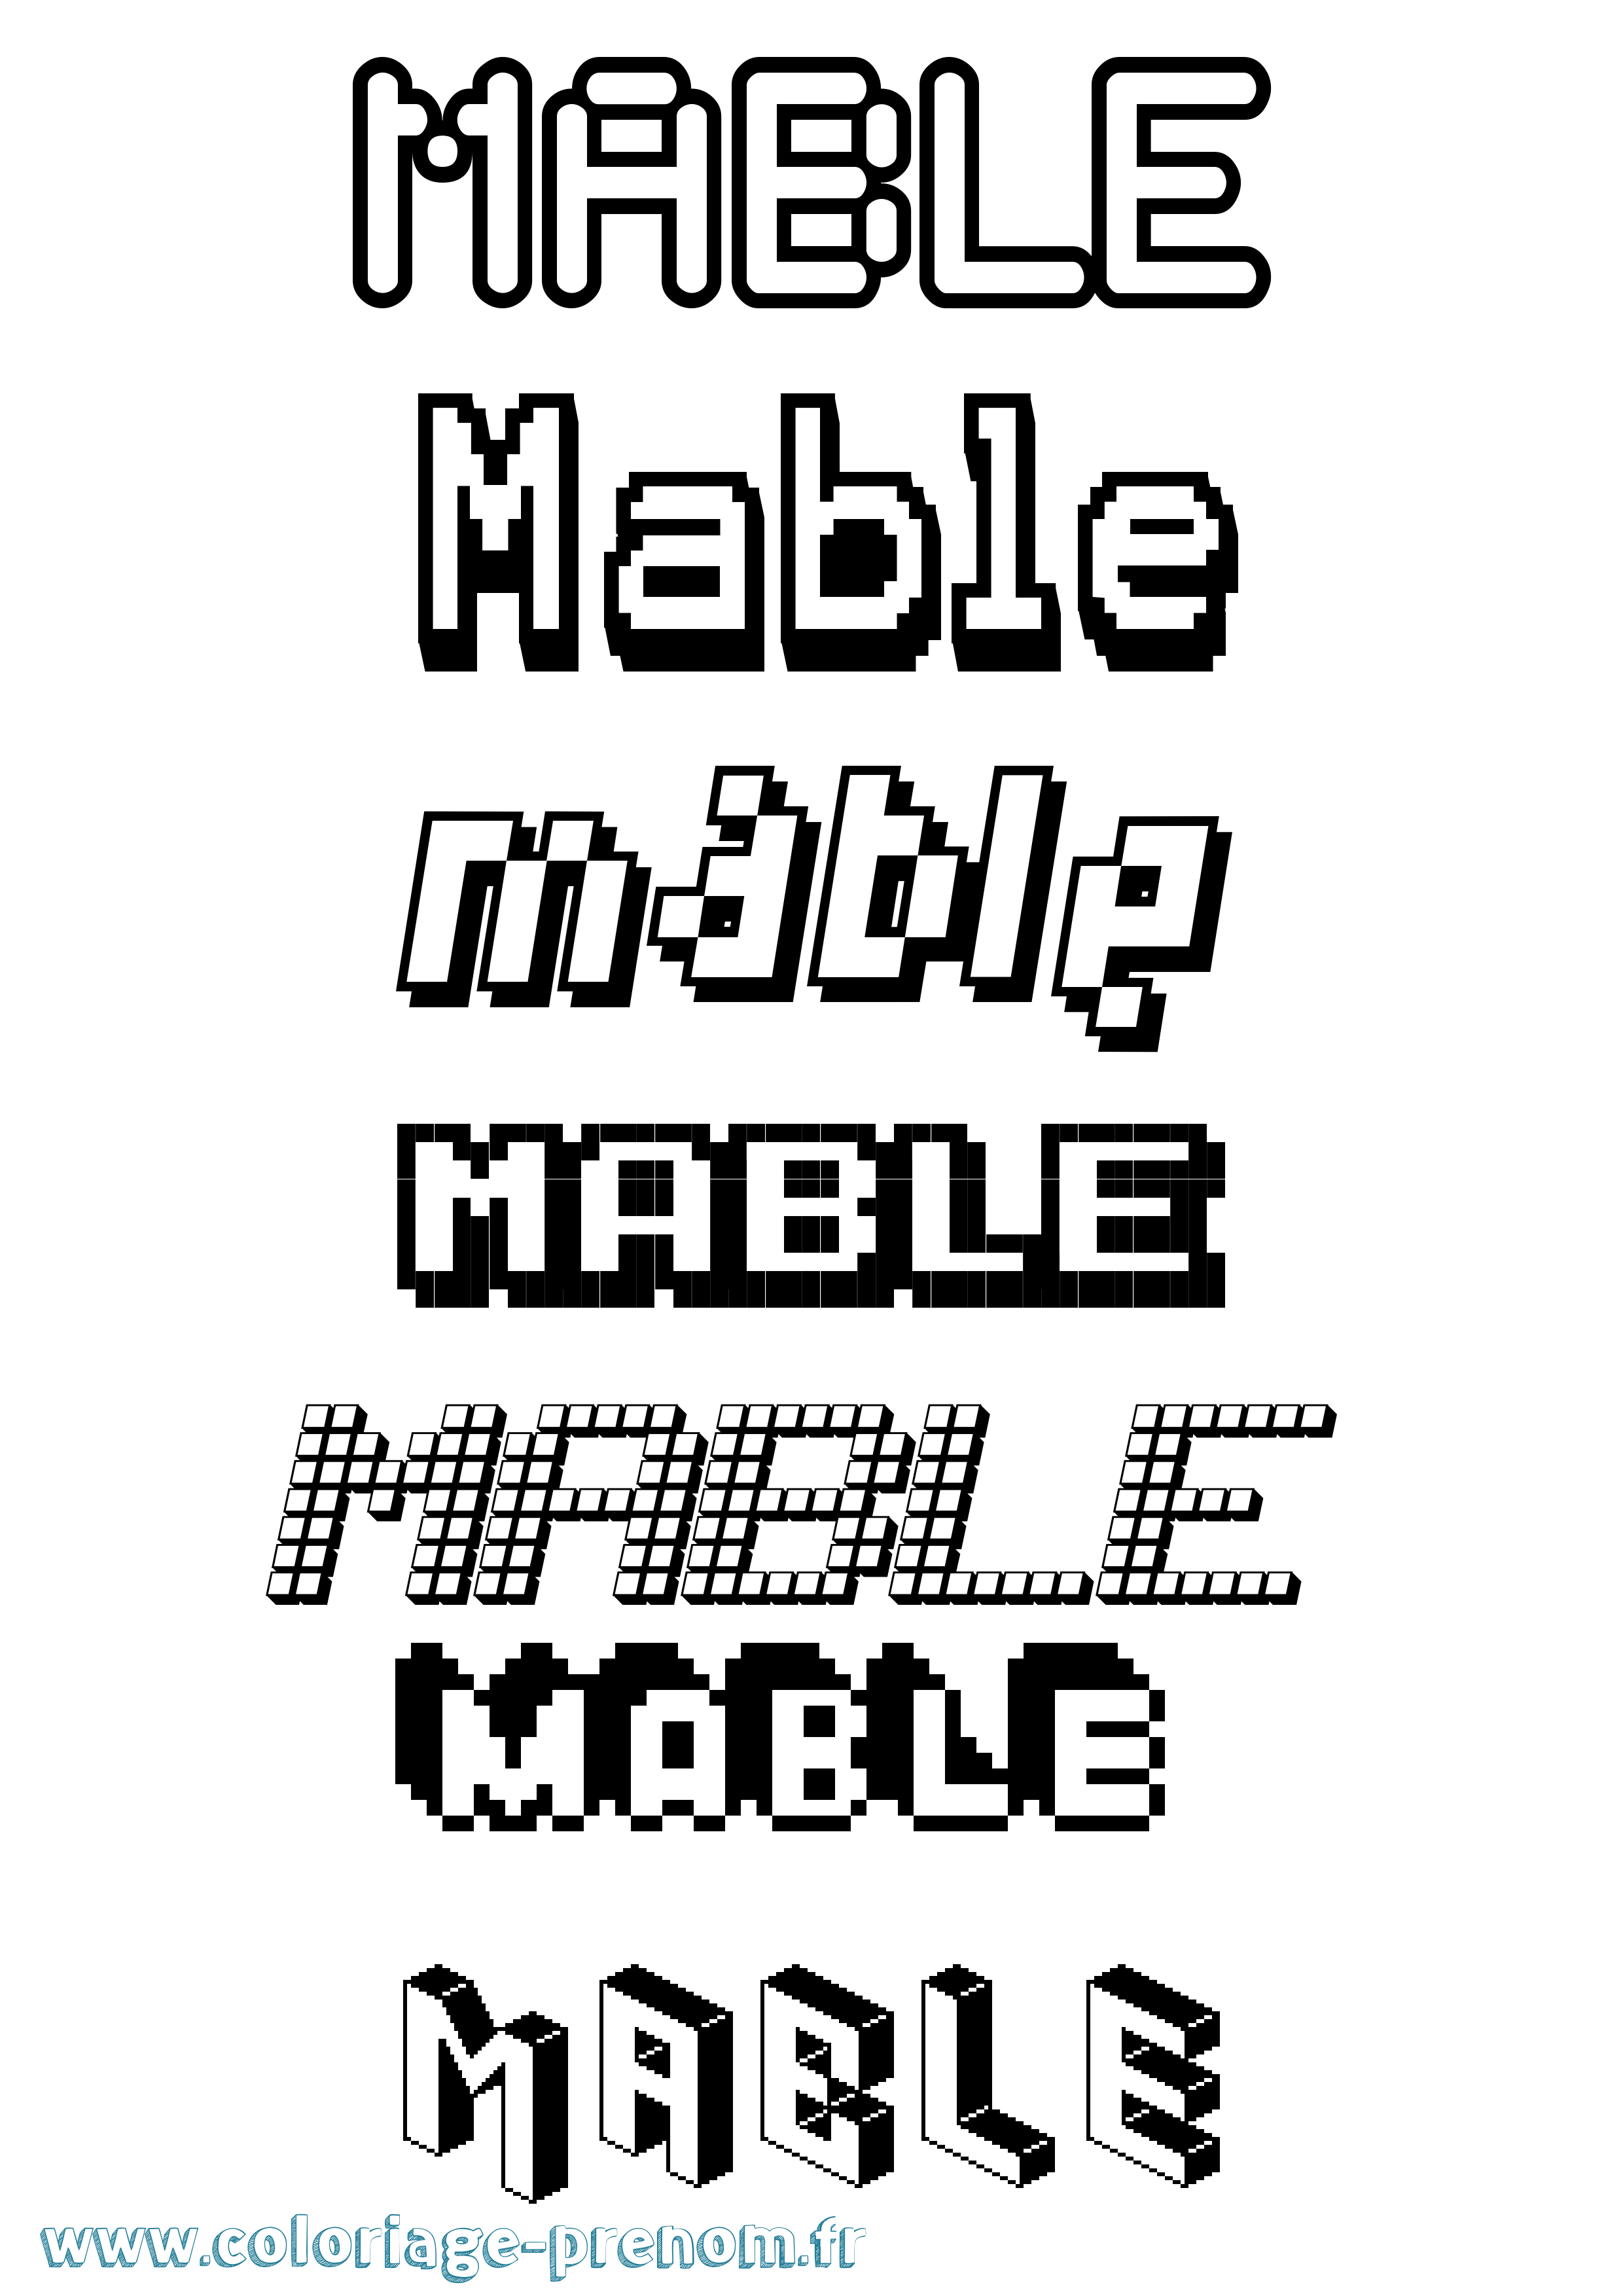 Coloriage prénom Mable Pixel